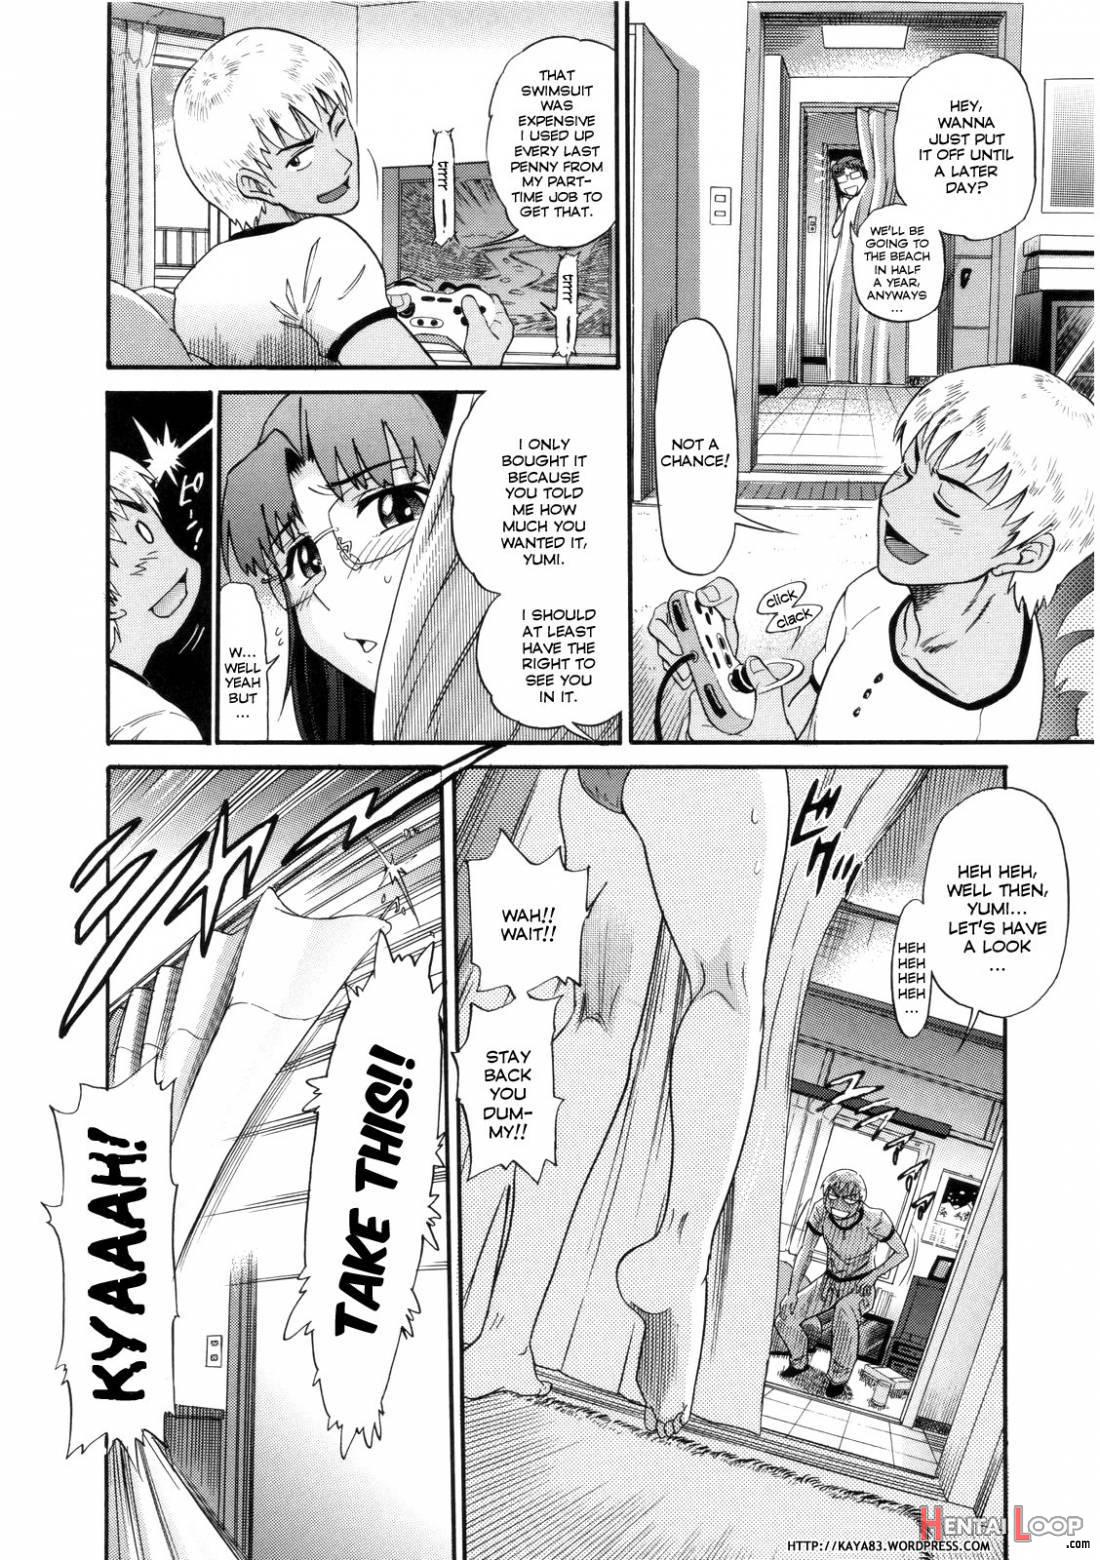 B-Chiku page 181